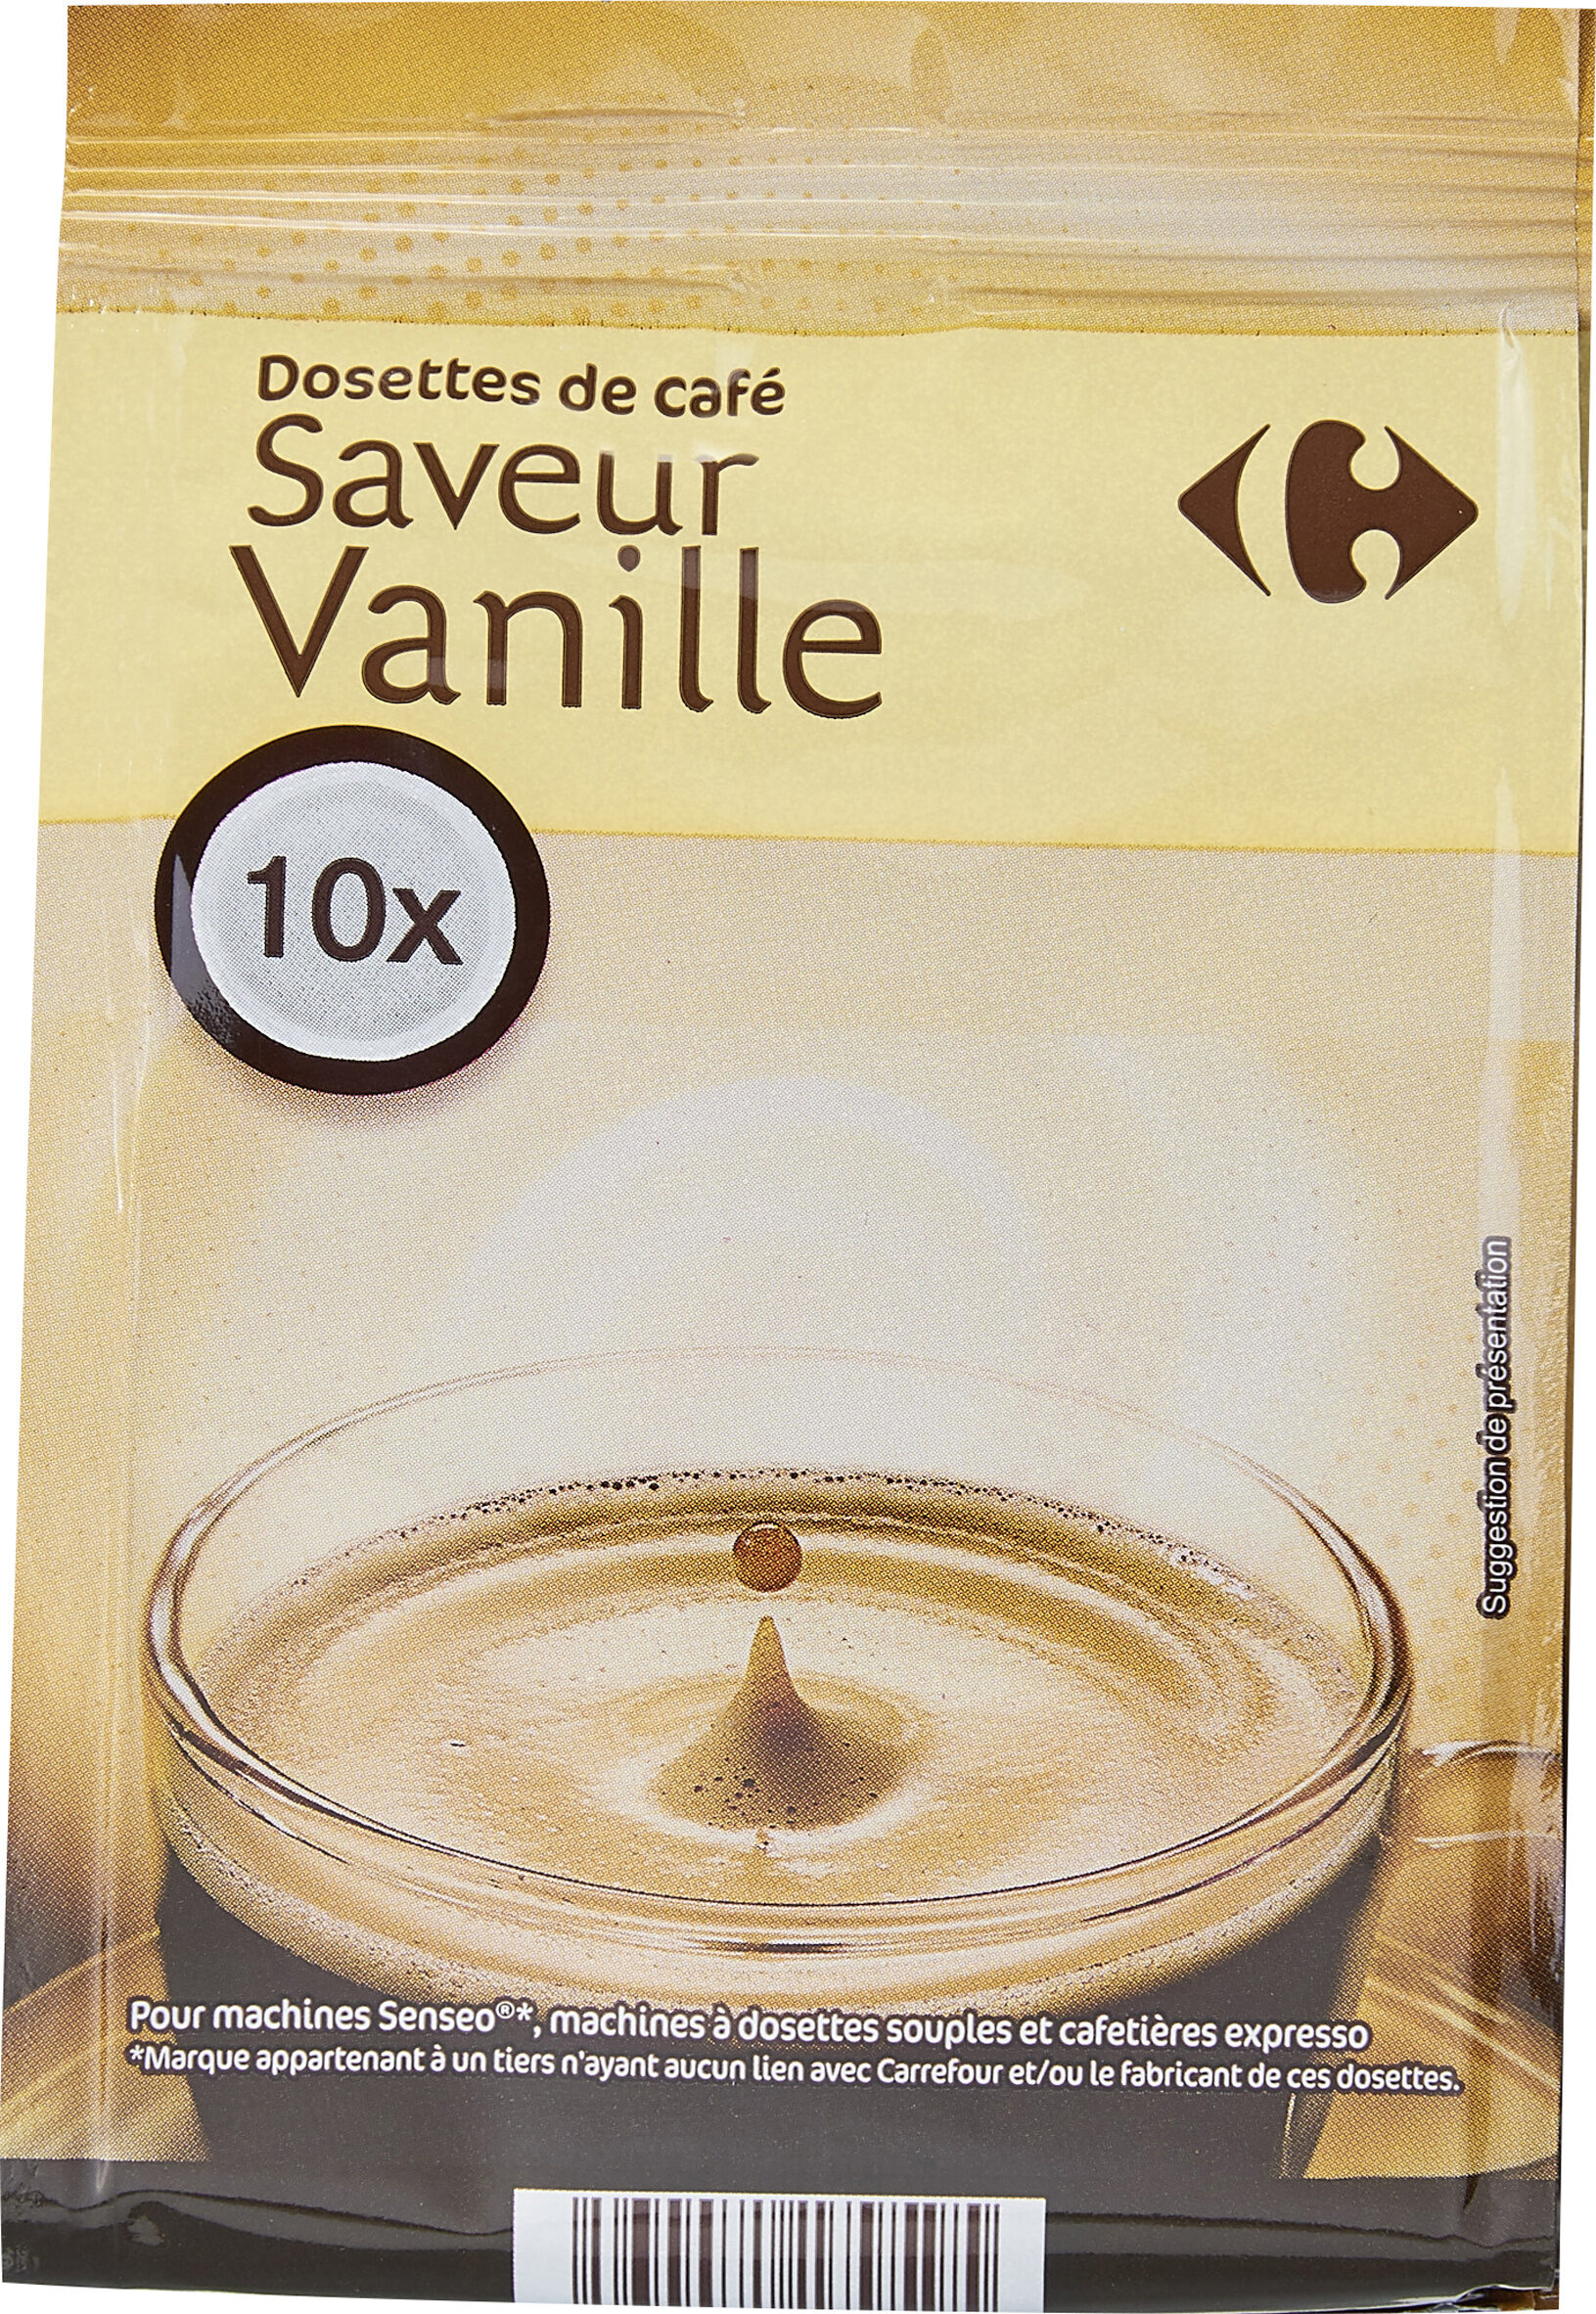 Dosettes de café saveur vanille - Product - fr